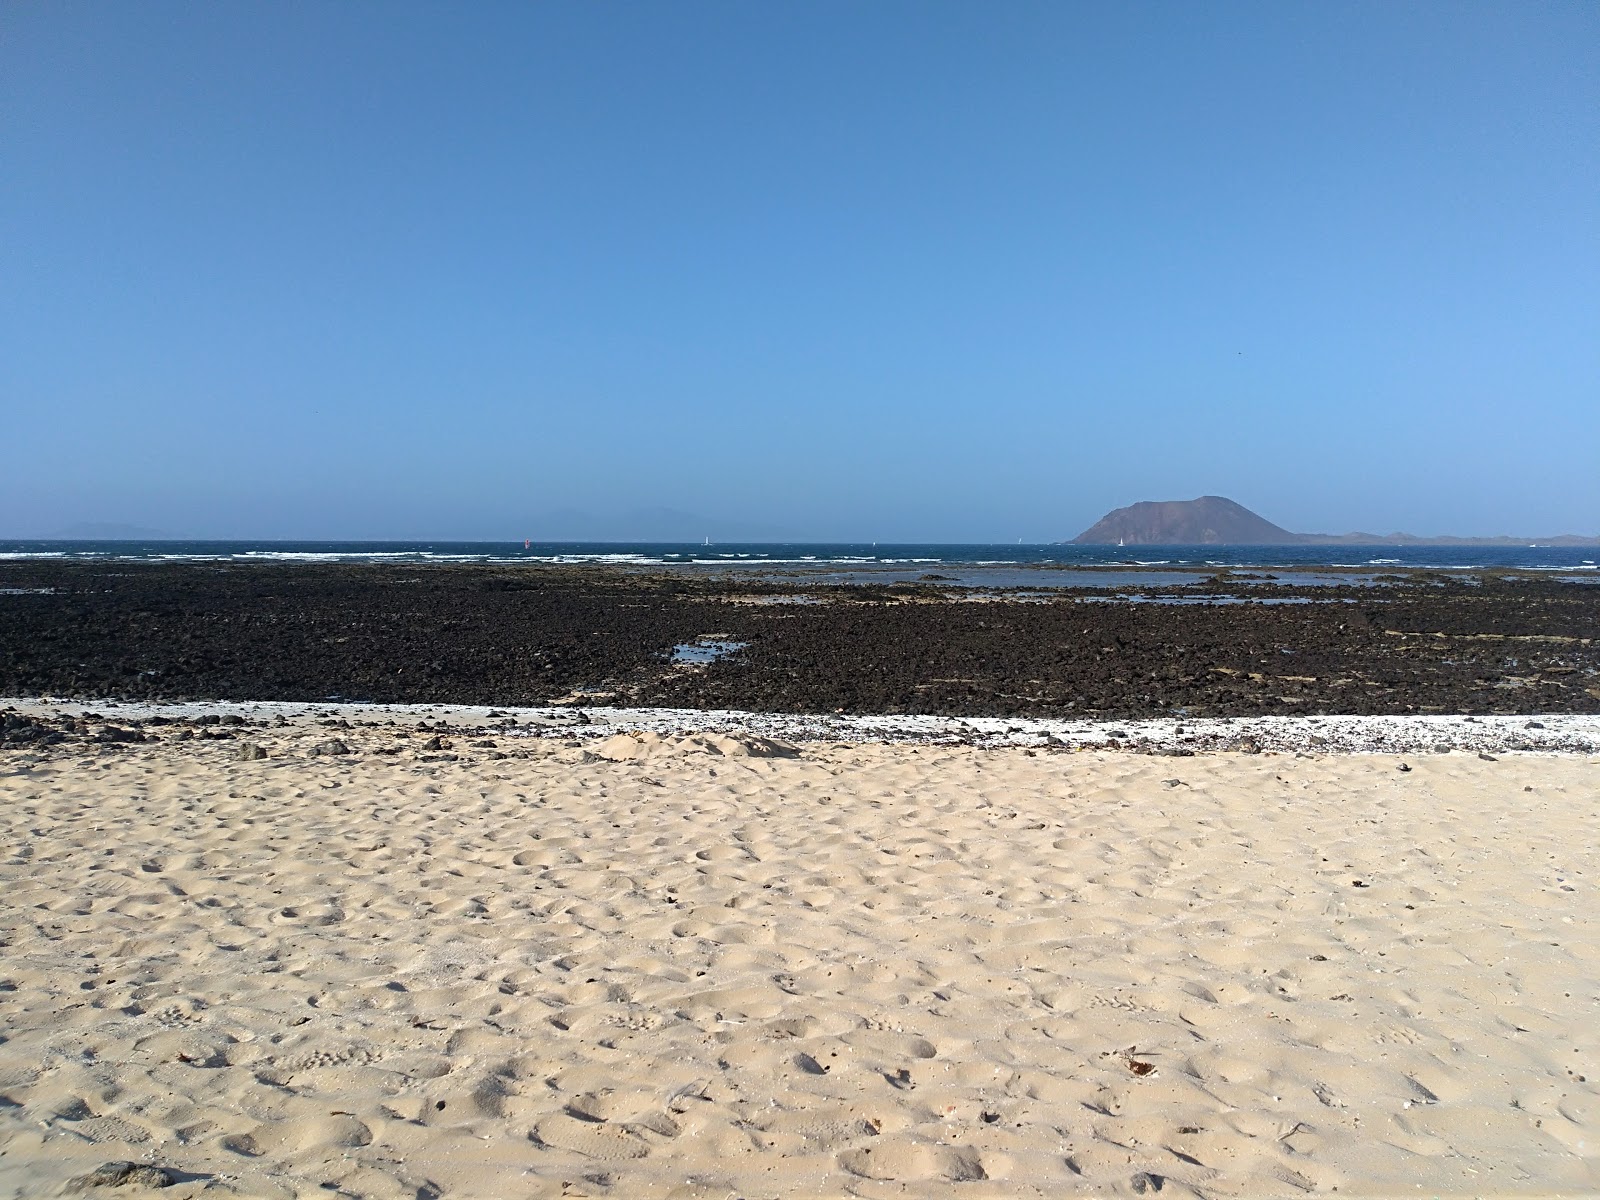 Playa Punta Prieta'in fotoğrafı taşlar yüzey ile